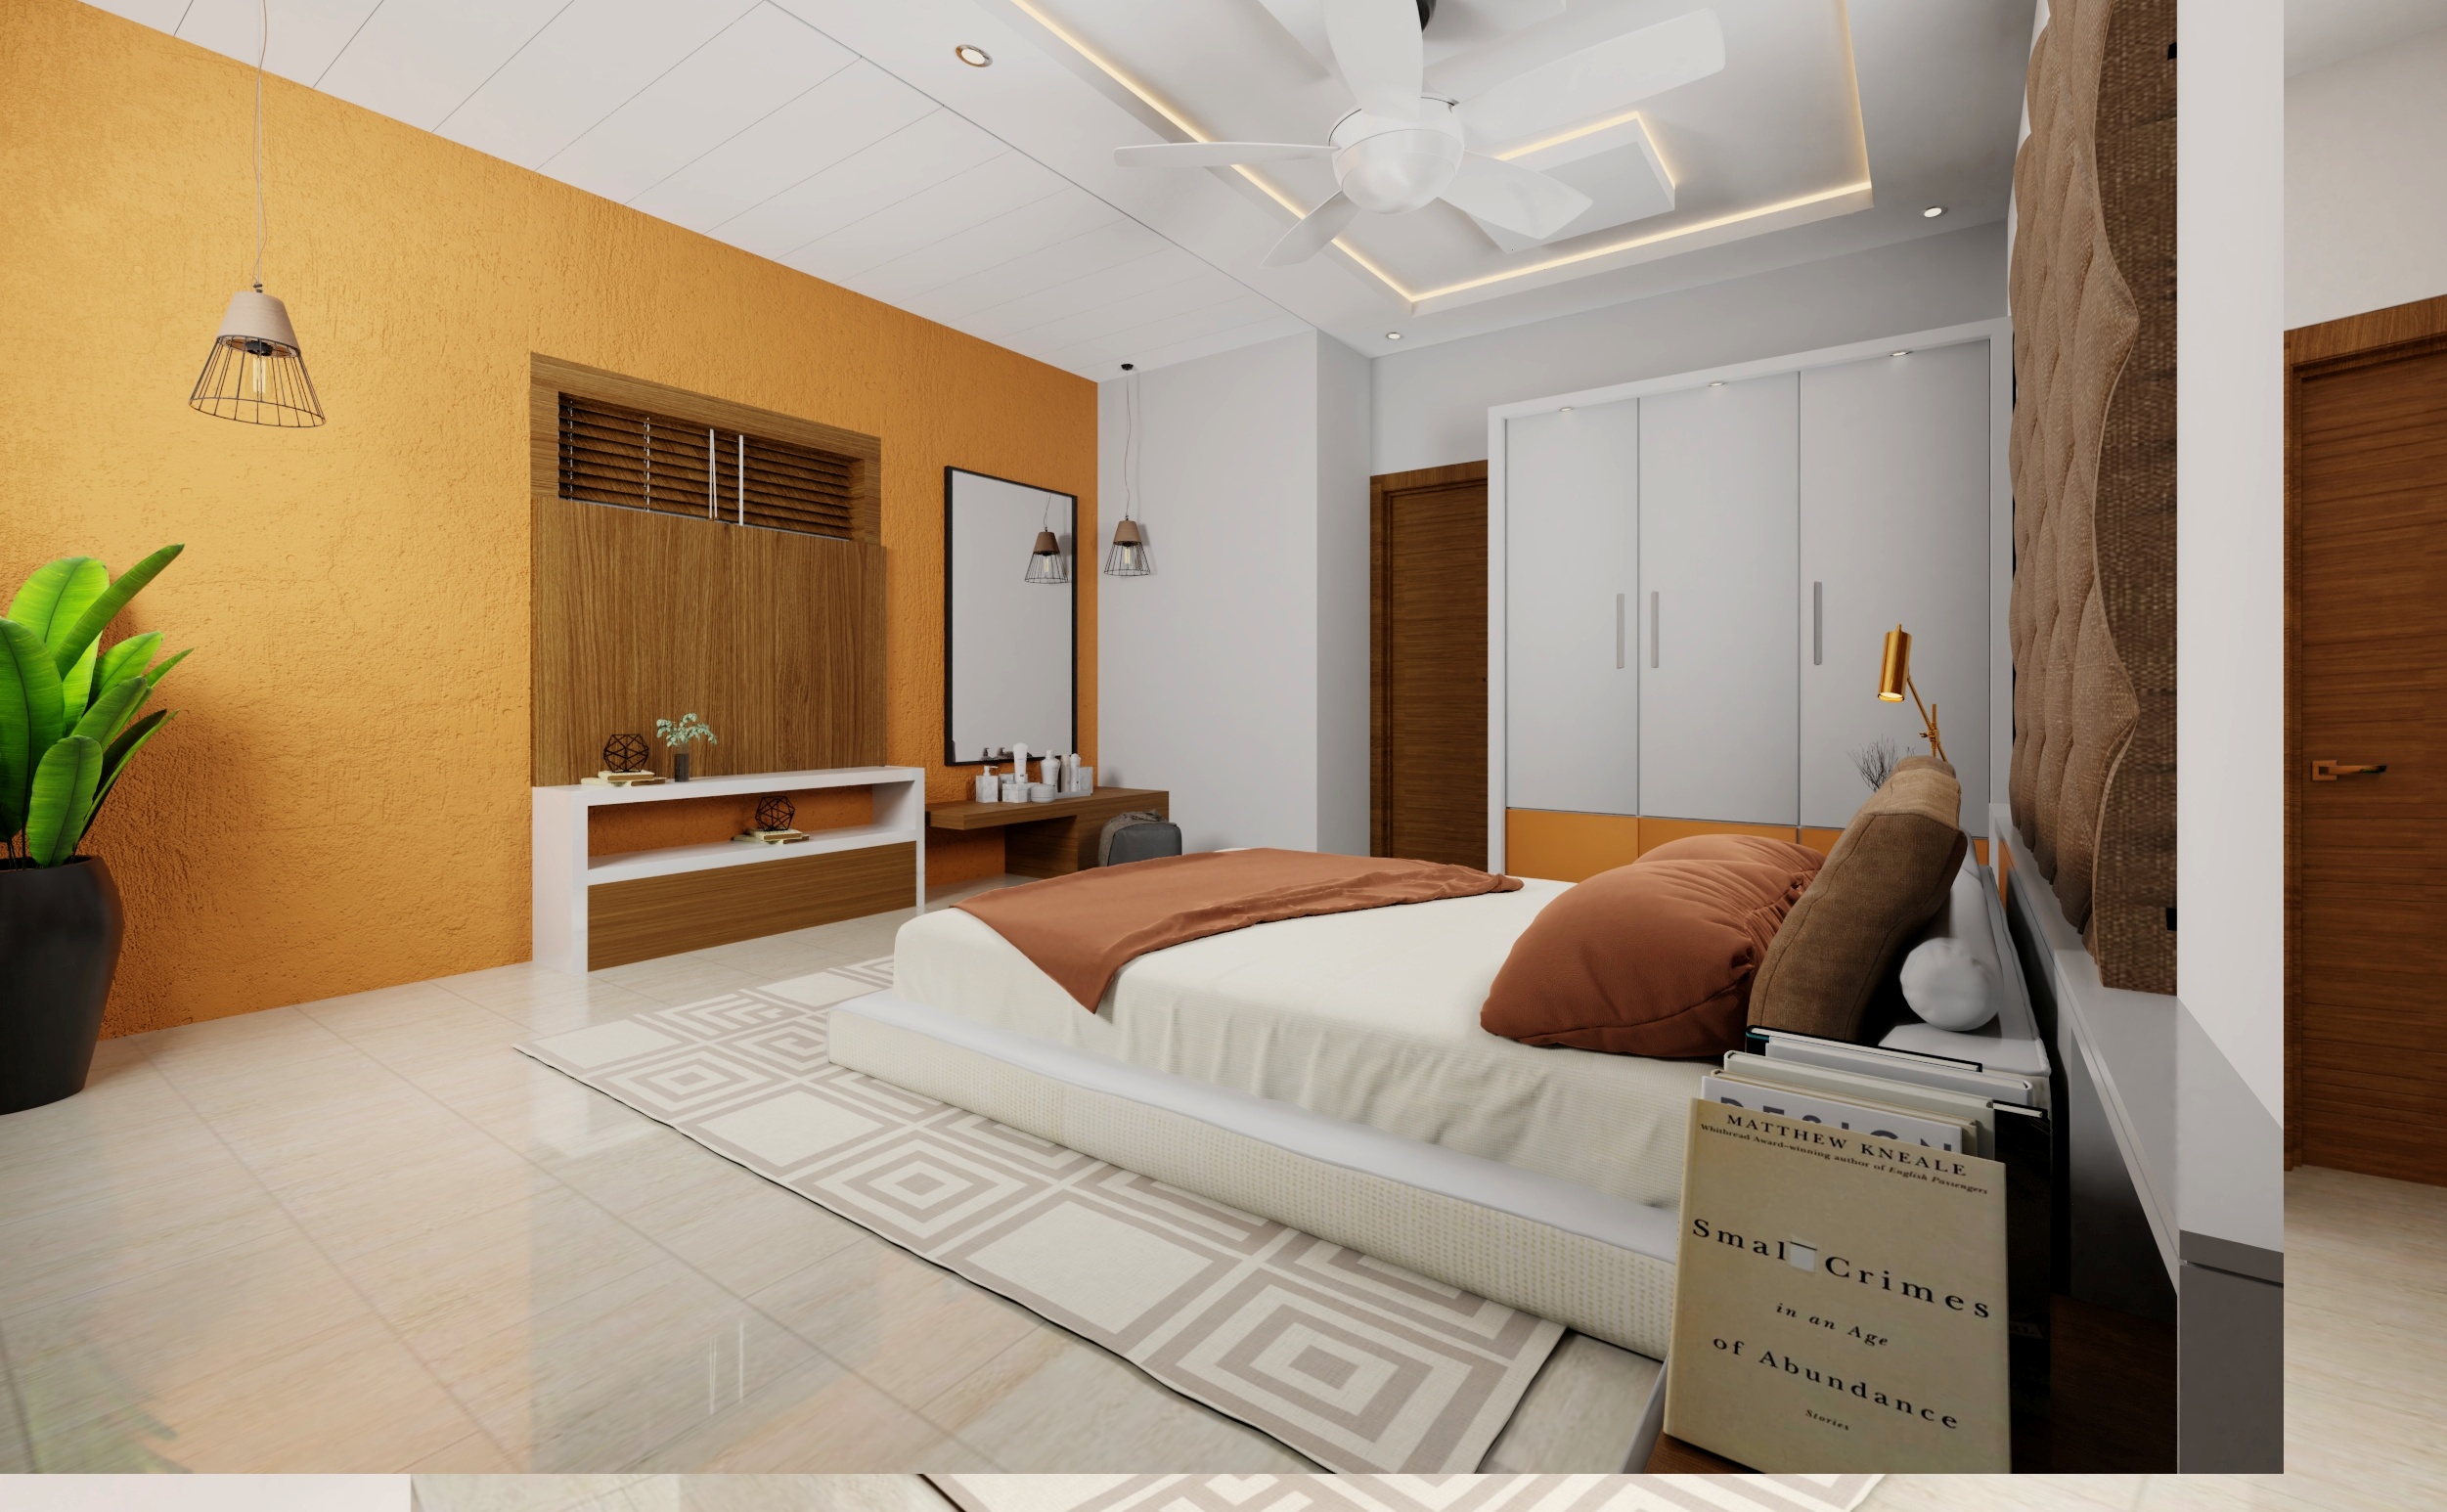 Bedroom interior designs 